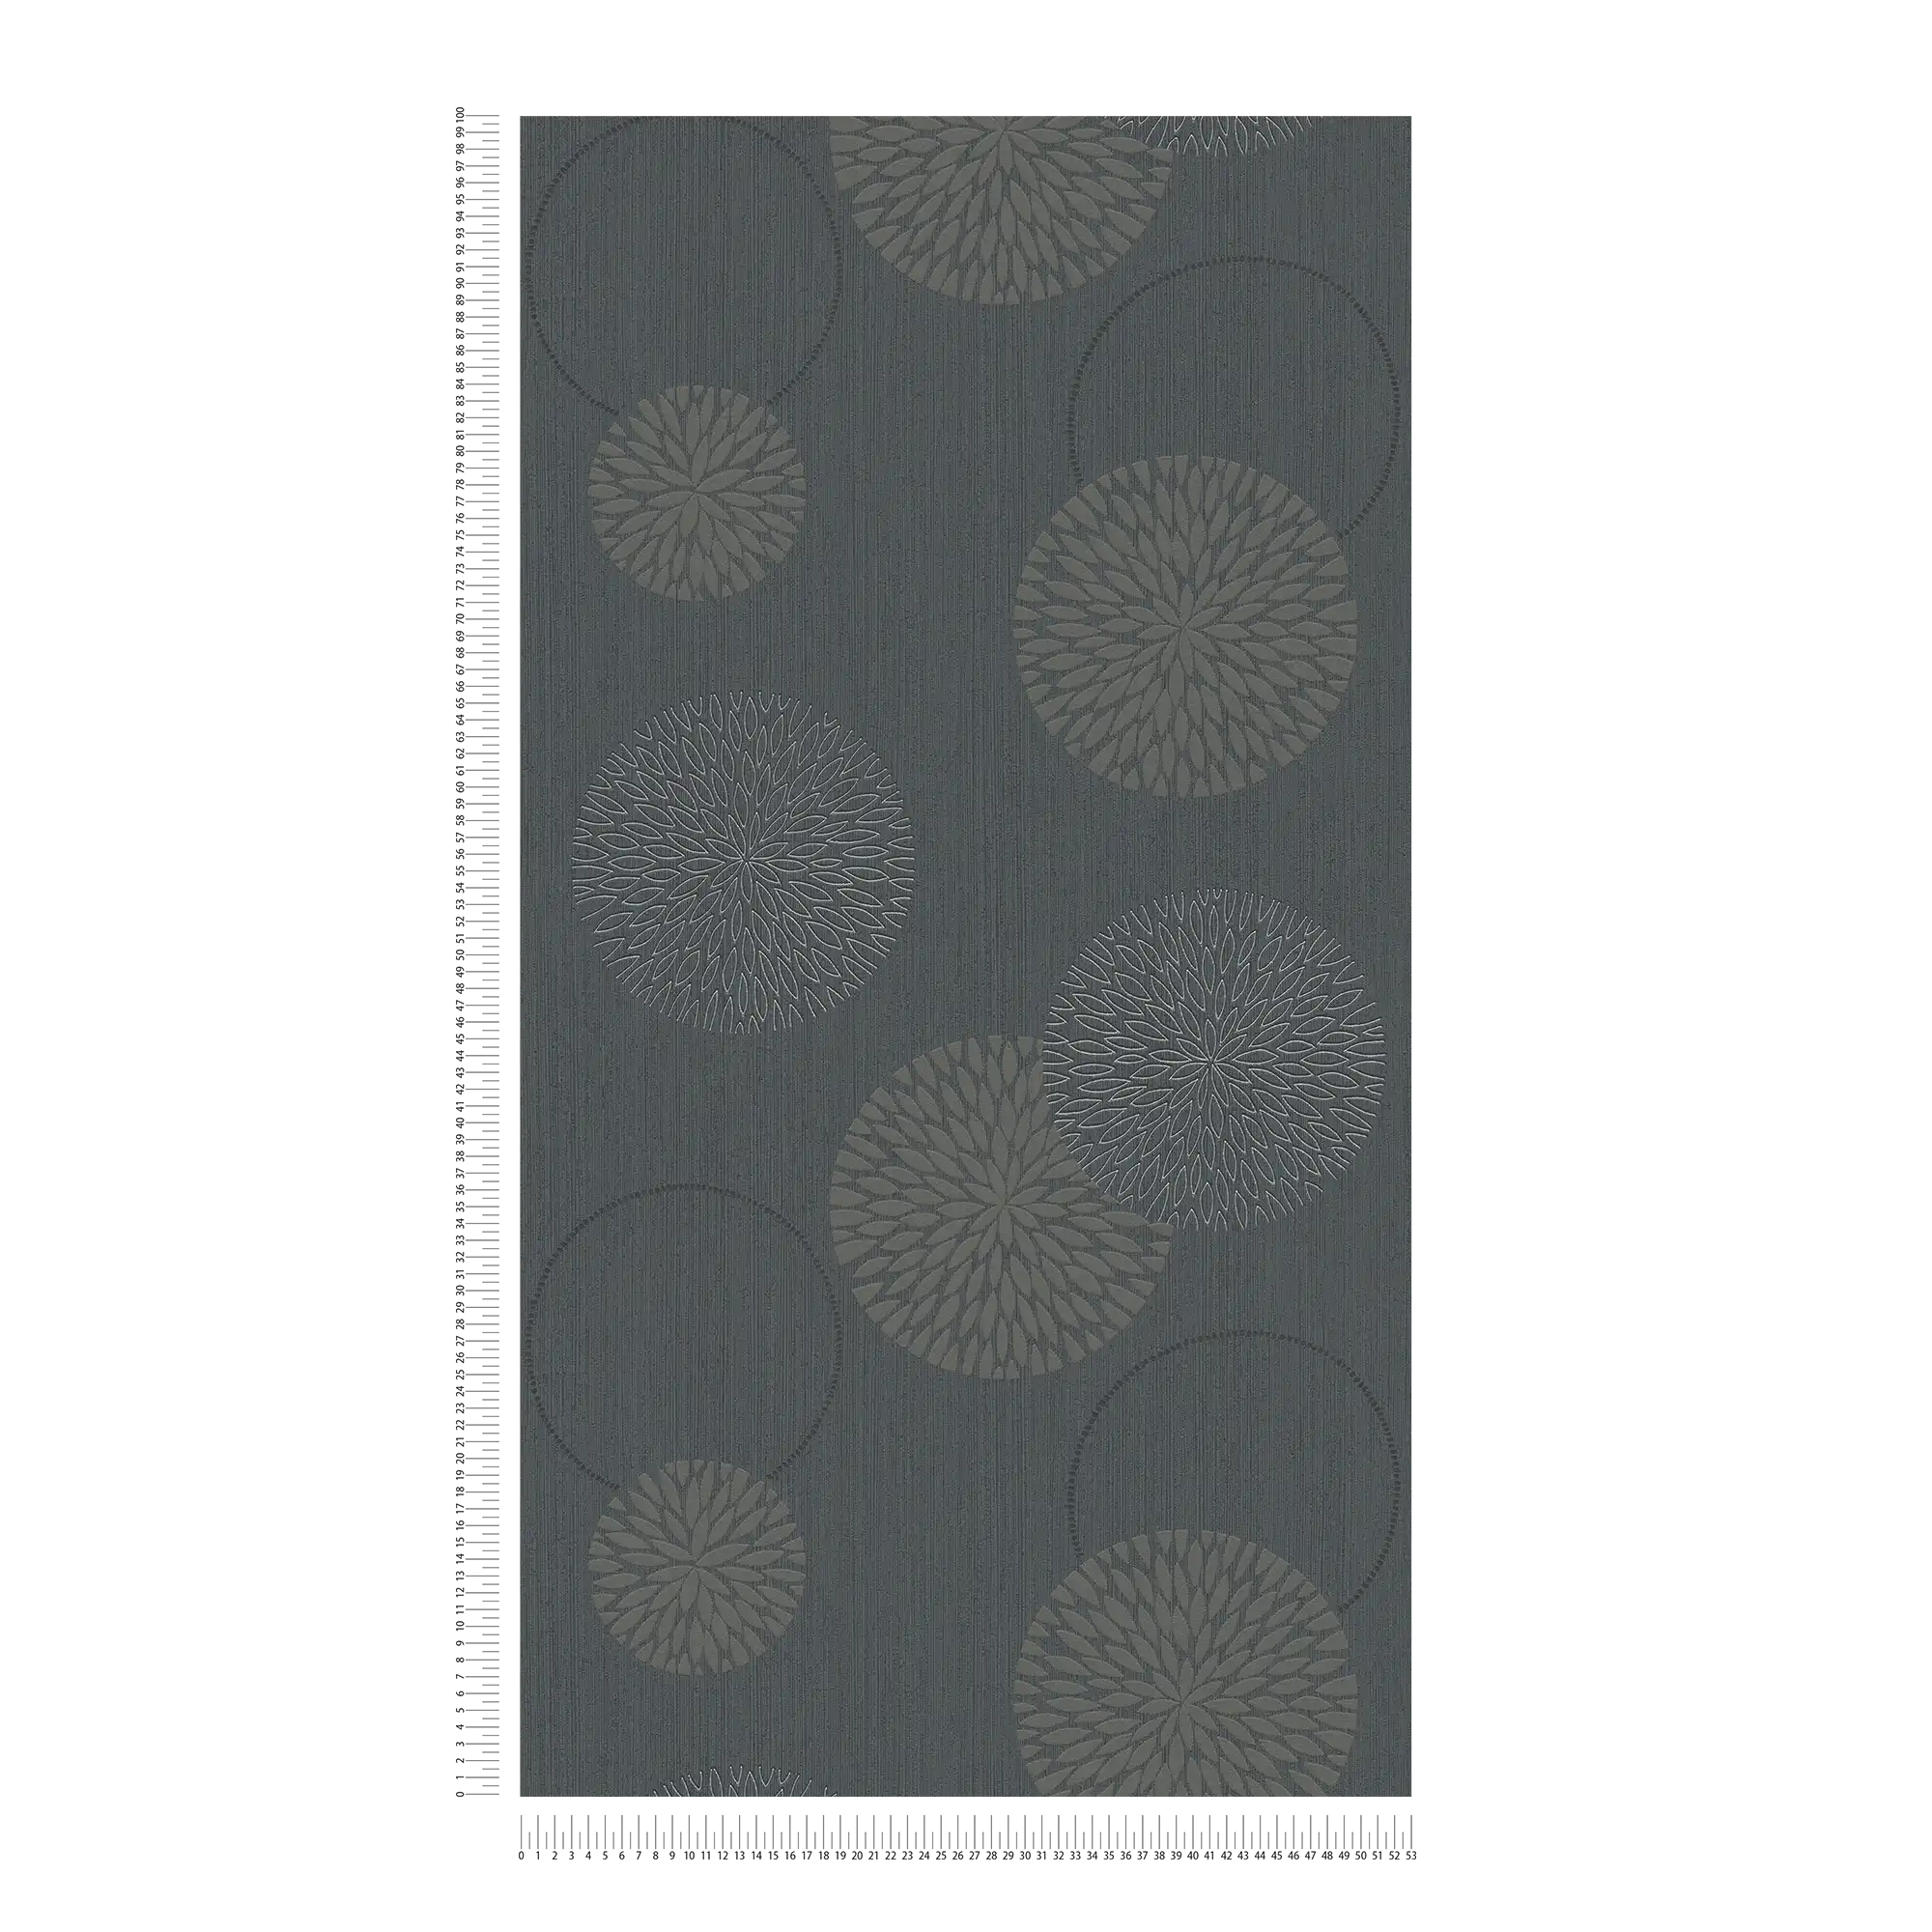             Vliesbehang bloemen in abstract design - grijs, zwart
        